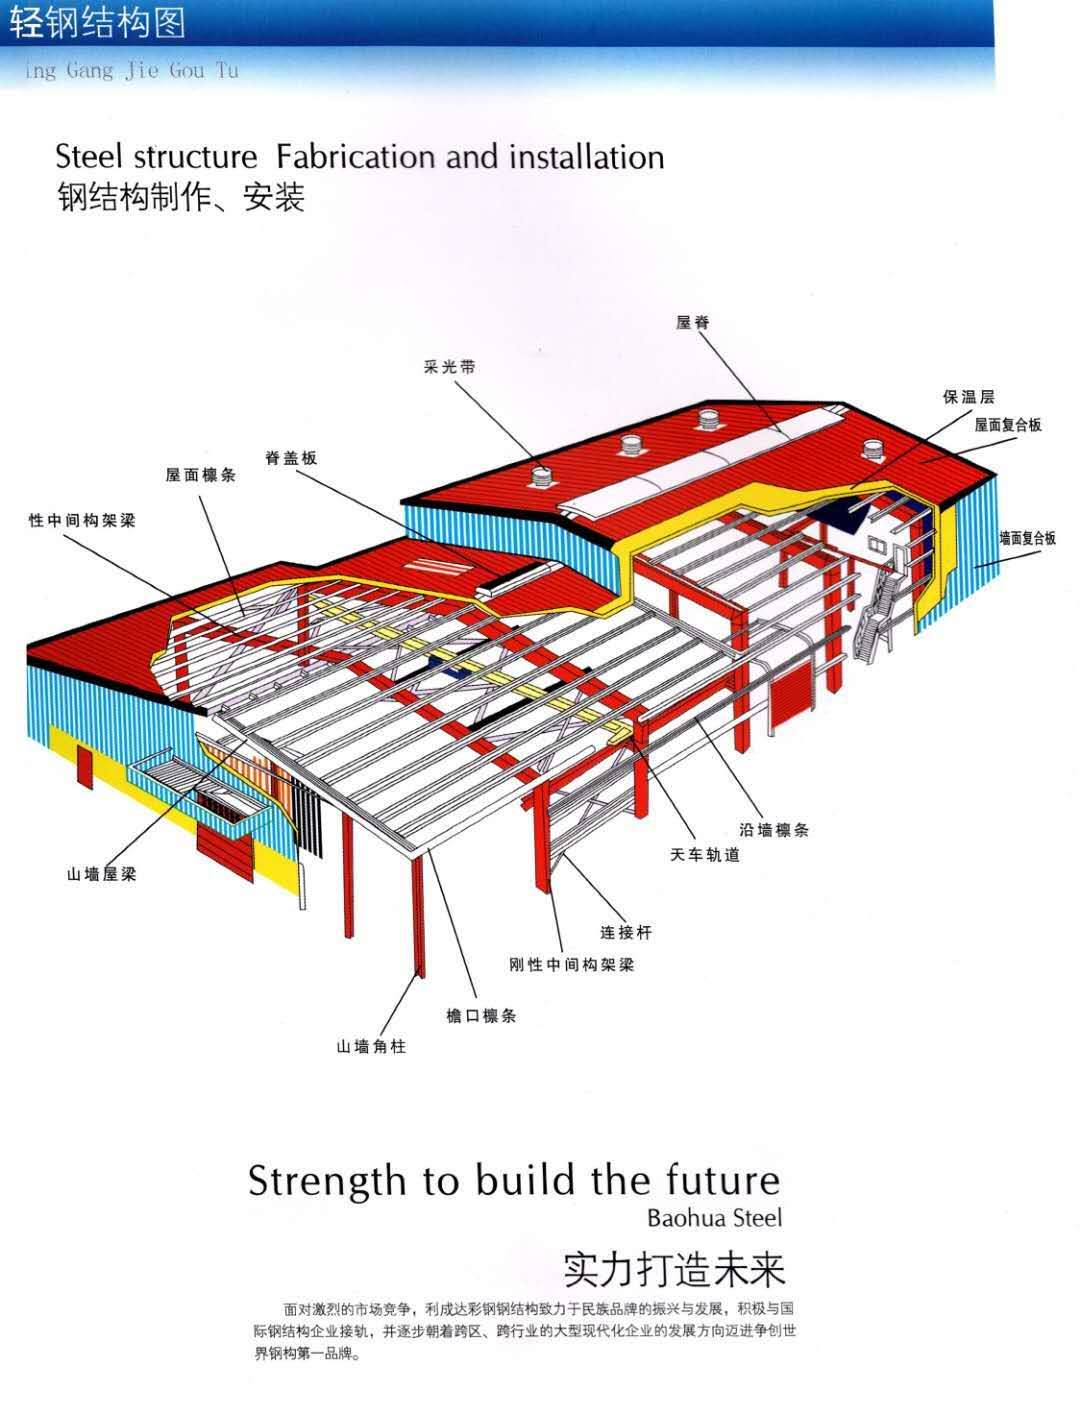 钢结构供应商 钢结构厂家批发 钢结构价格 钢结构图片  钢结构哪家强  钢结构图片